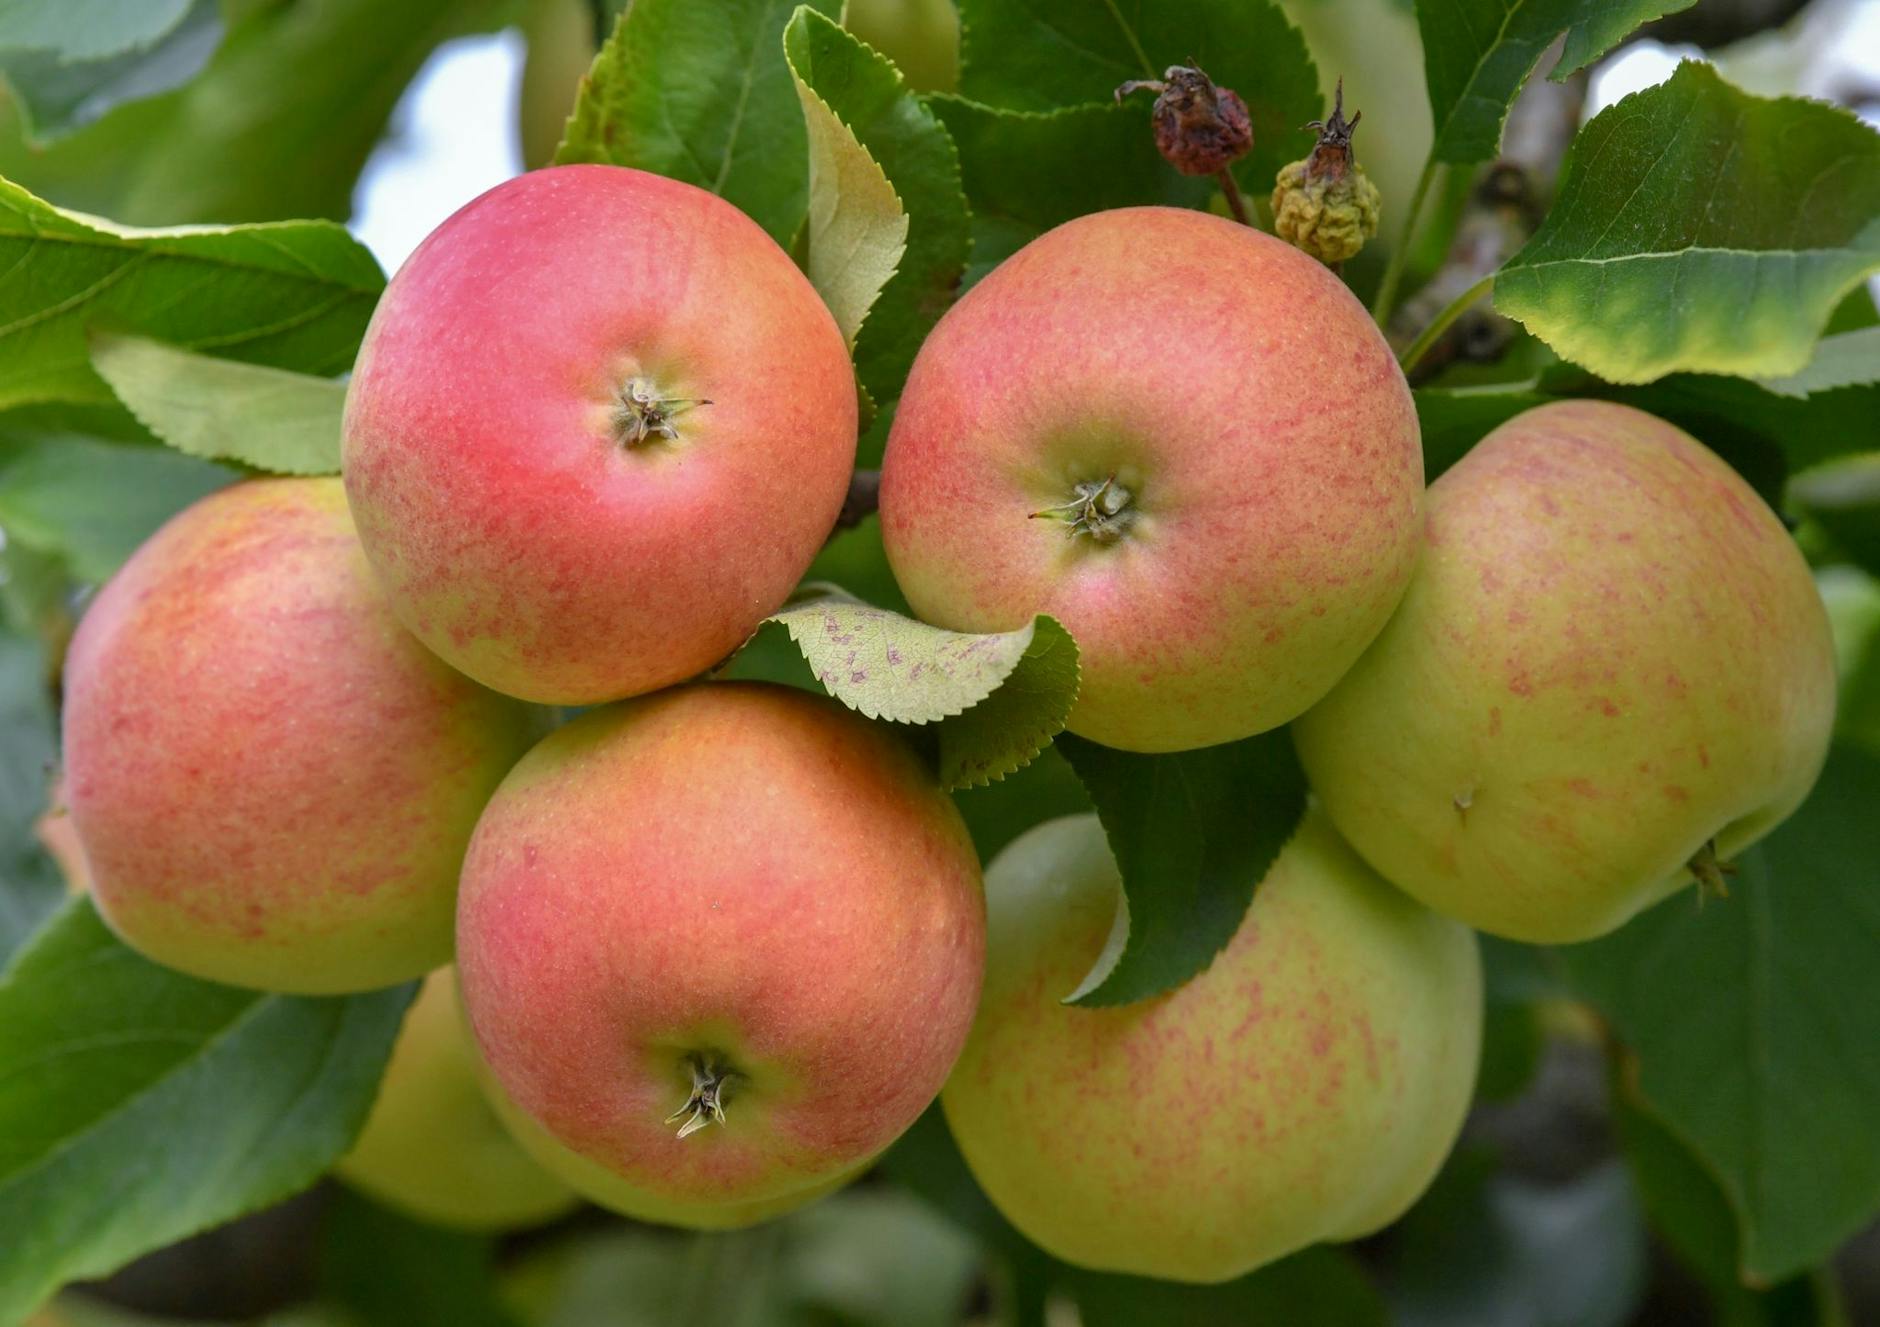 ARCHIV - Äpfel der Sorte Gala Royal wachsen auf einer Plantage an einem Baum.  a/Symbolbild